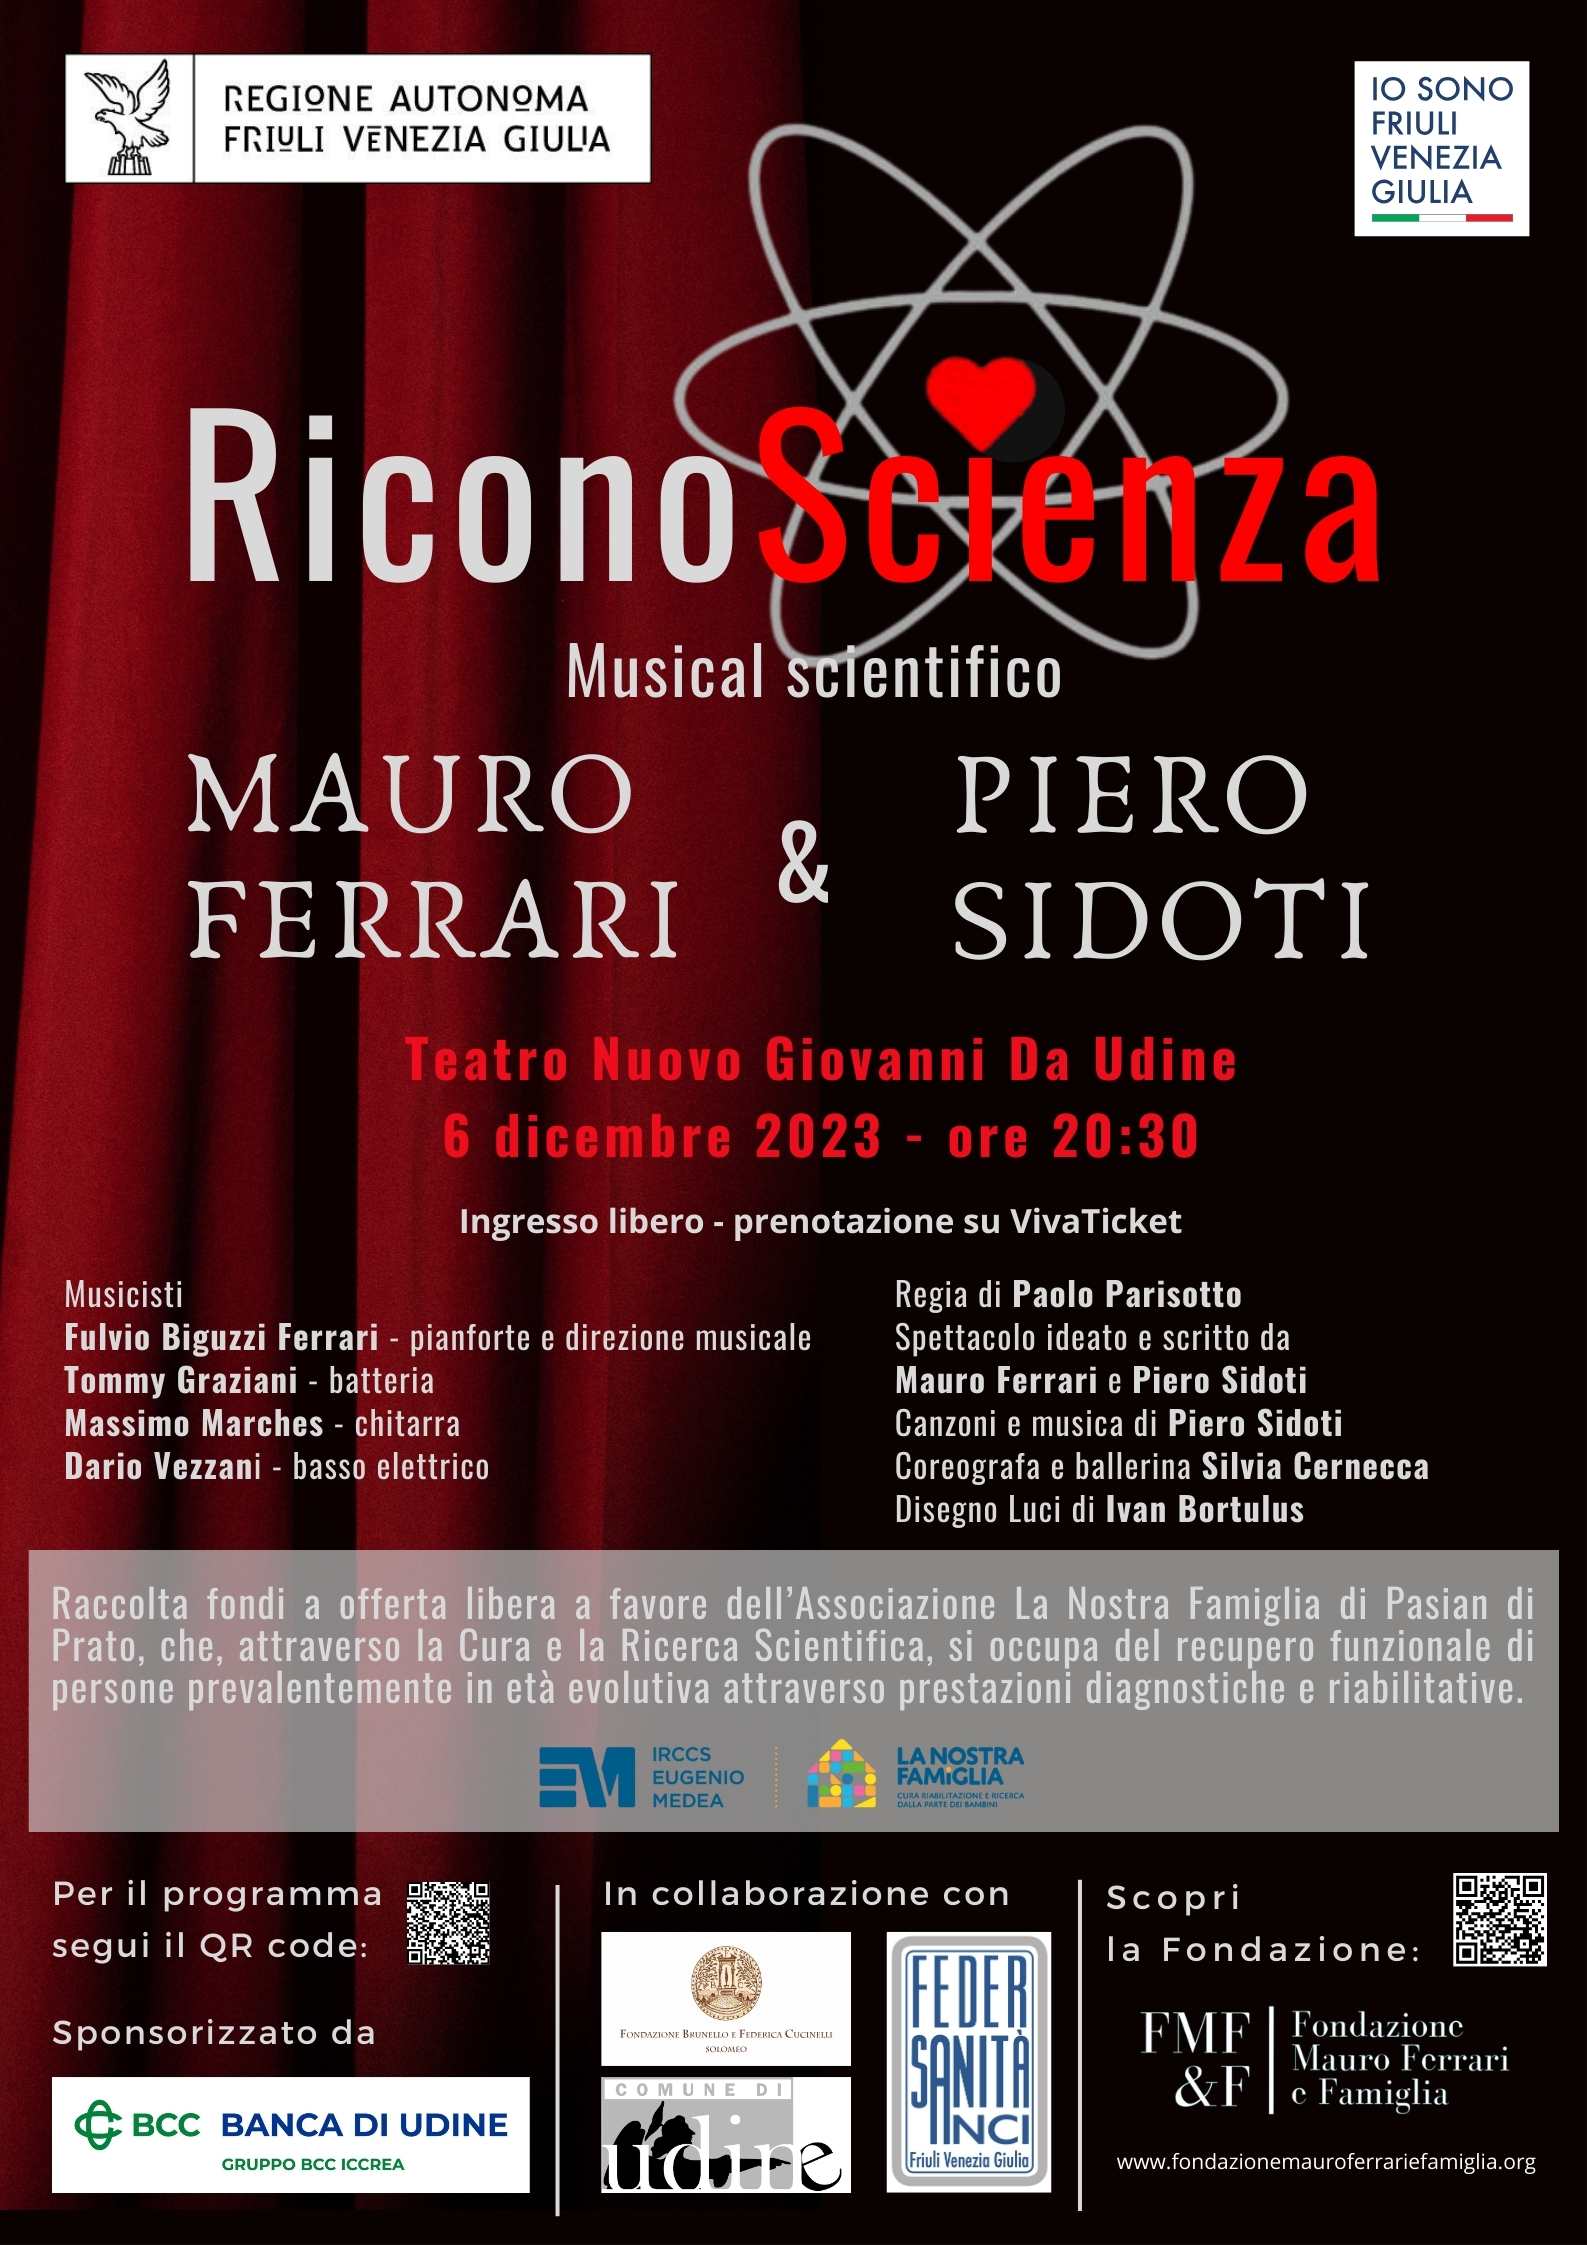 RiconoScienza Teatro Nuovo Giovanni da Udine  Mauro Ferrari Piero Sidoti